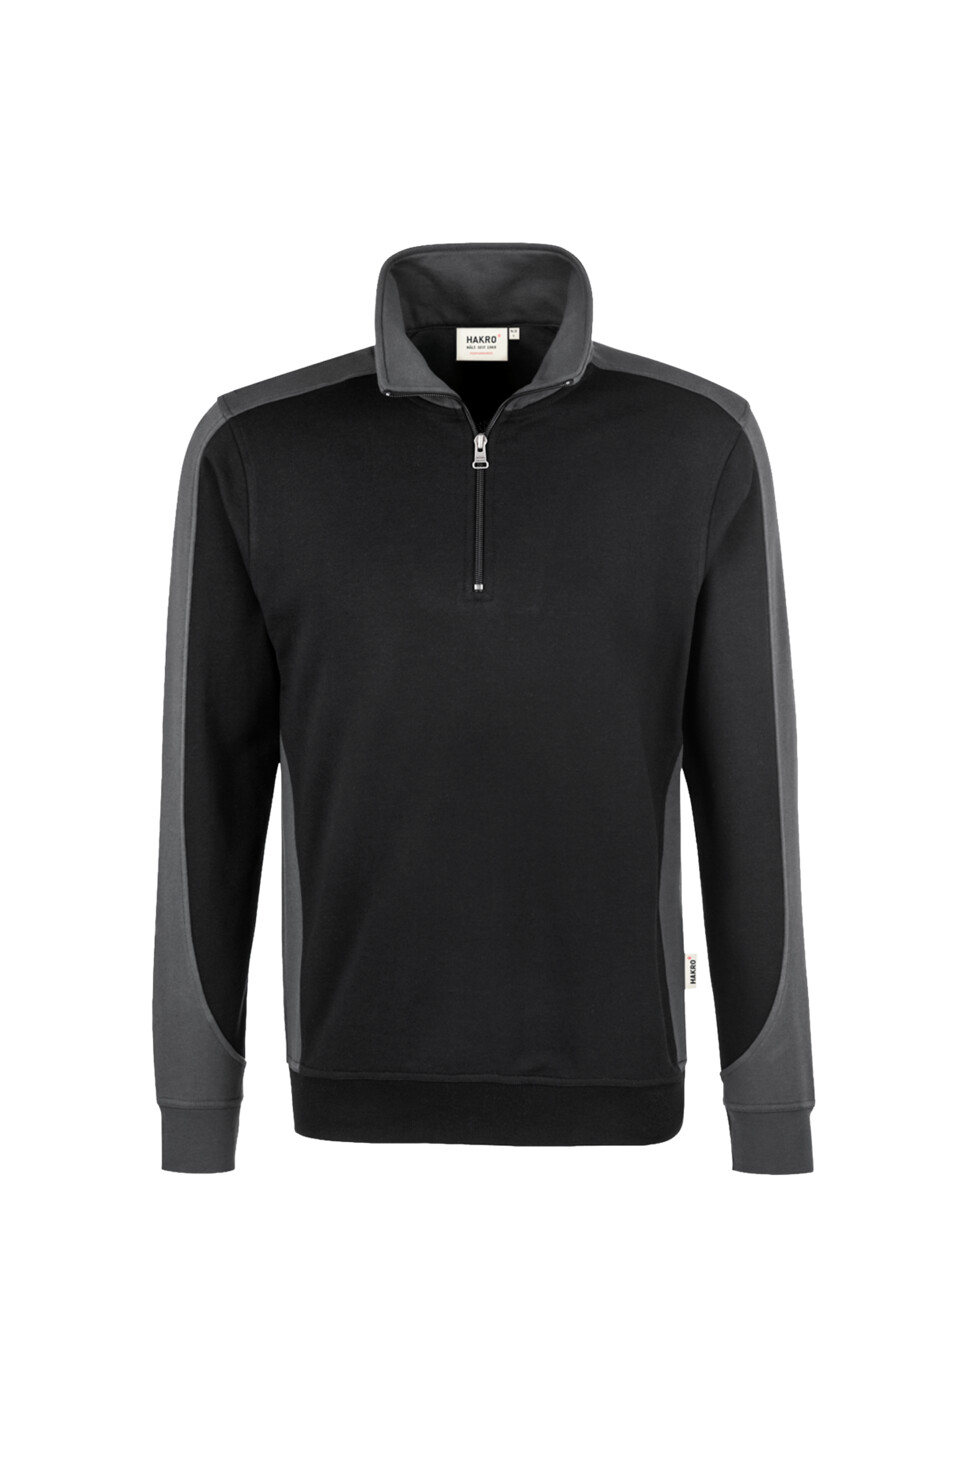 NO. 476 Zip-Sweatshirt Contrast Mikralinar®